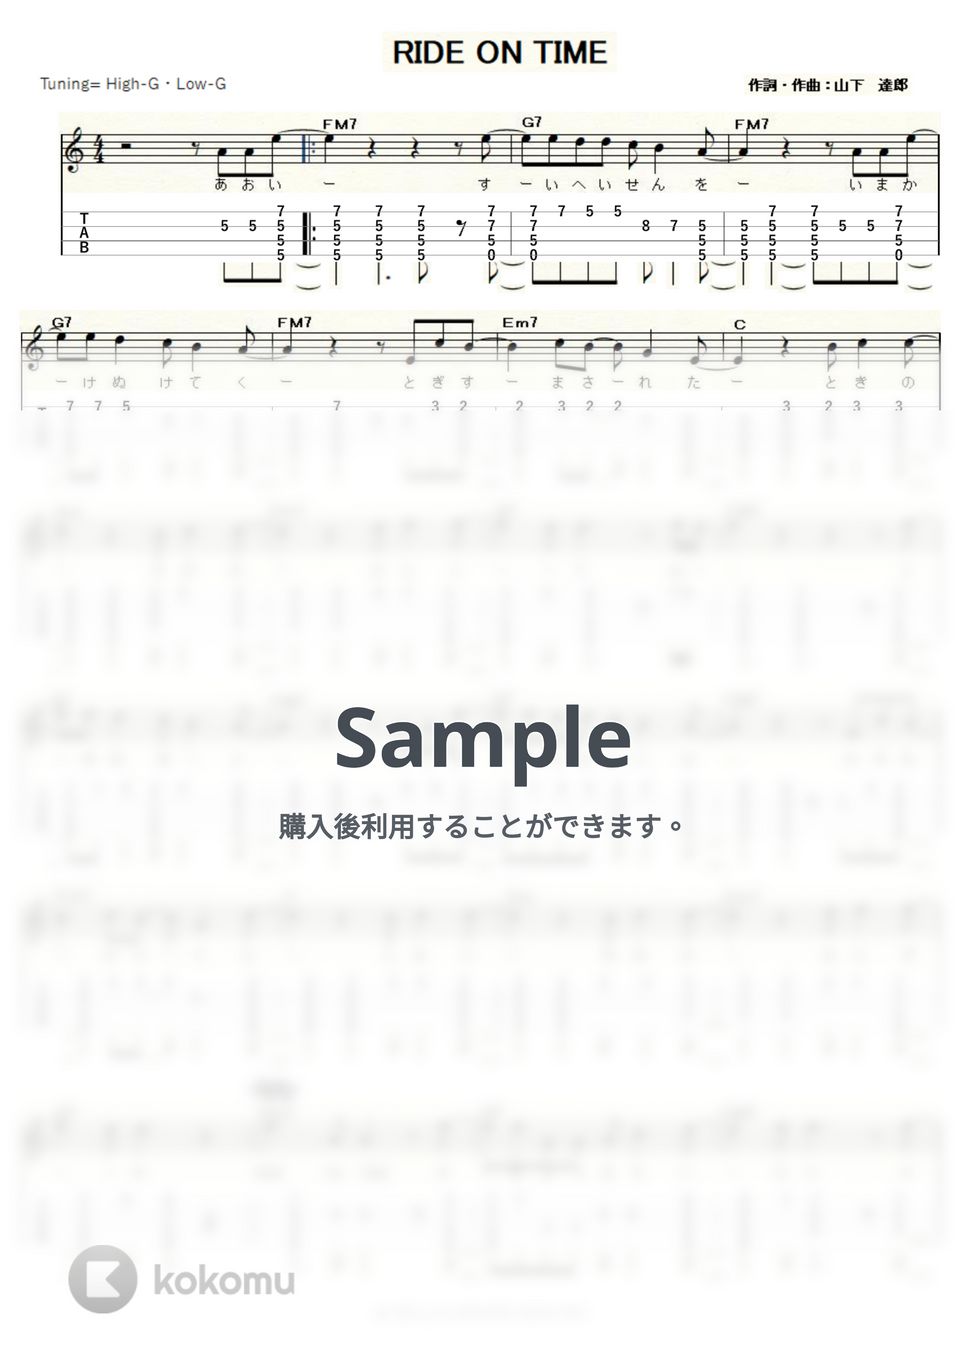 山下達郎 - RIDE ON TIME (ｳｸﾚﾚｿﾛ / High-G・Low-G / 中級～上級) by ukulelepapa